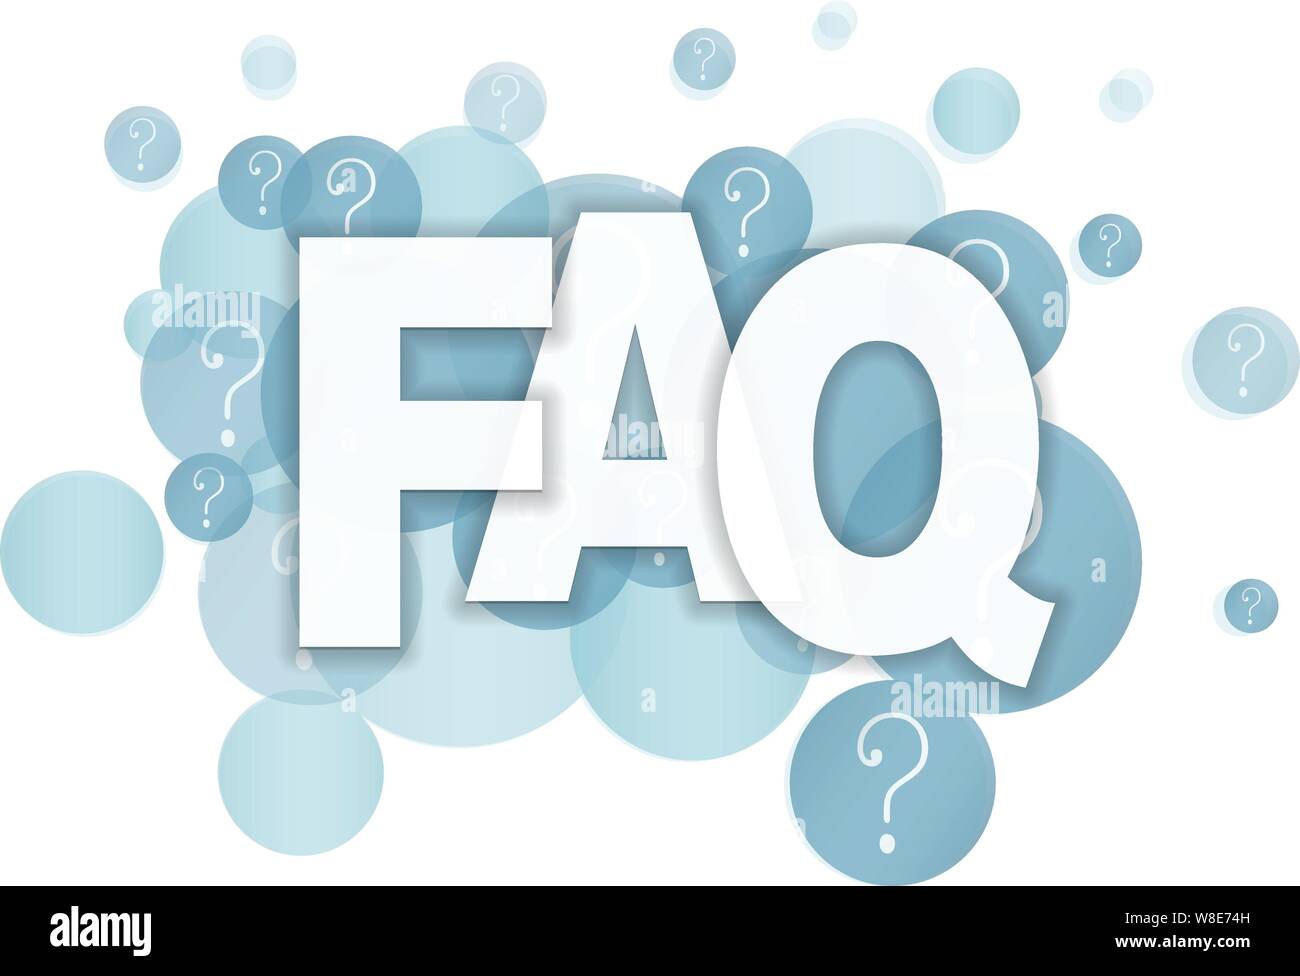 FAQ auf Blau semi-transparente Blasen mit Fragezeichen Vector Illustration Stock Vektor